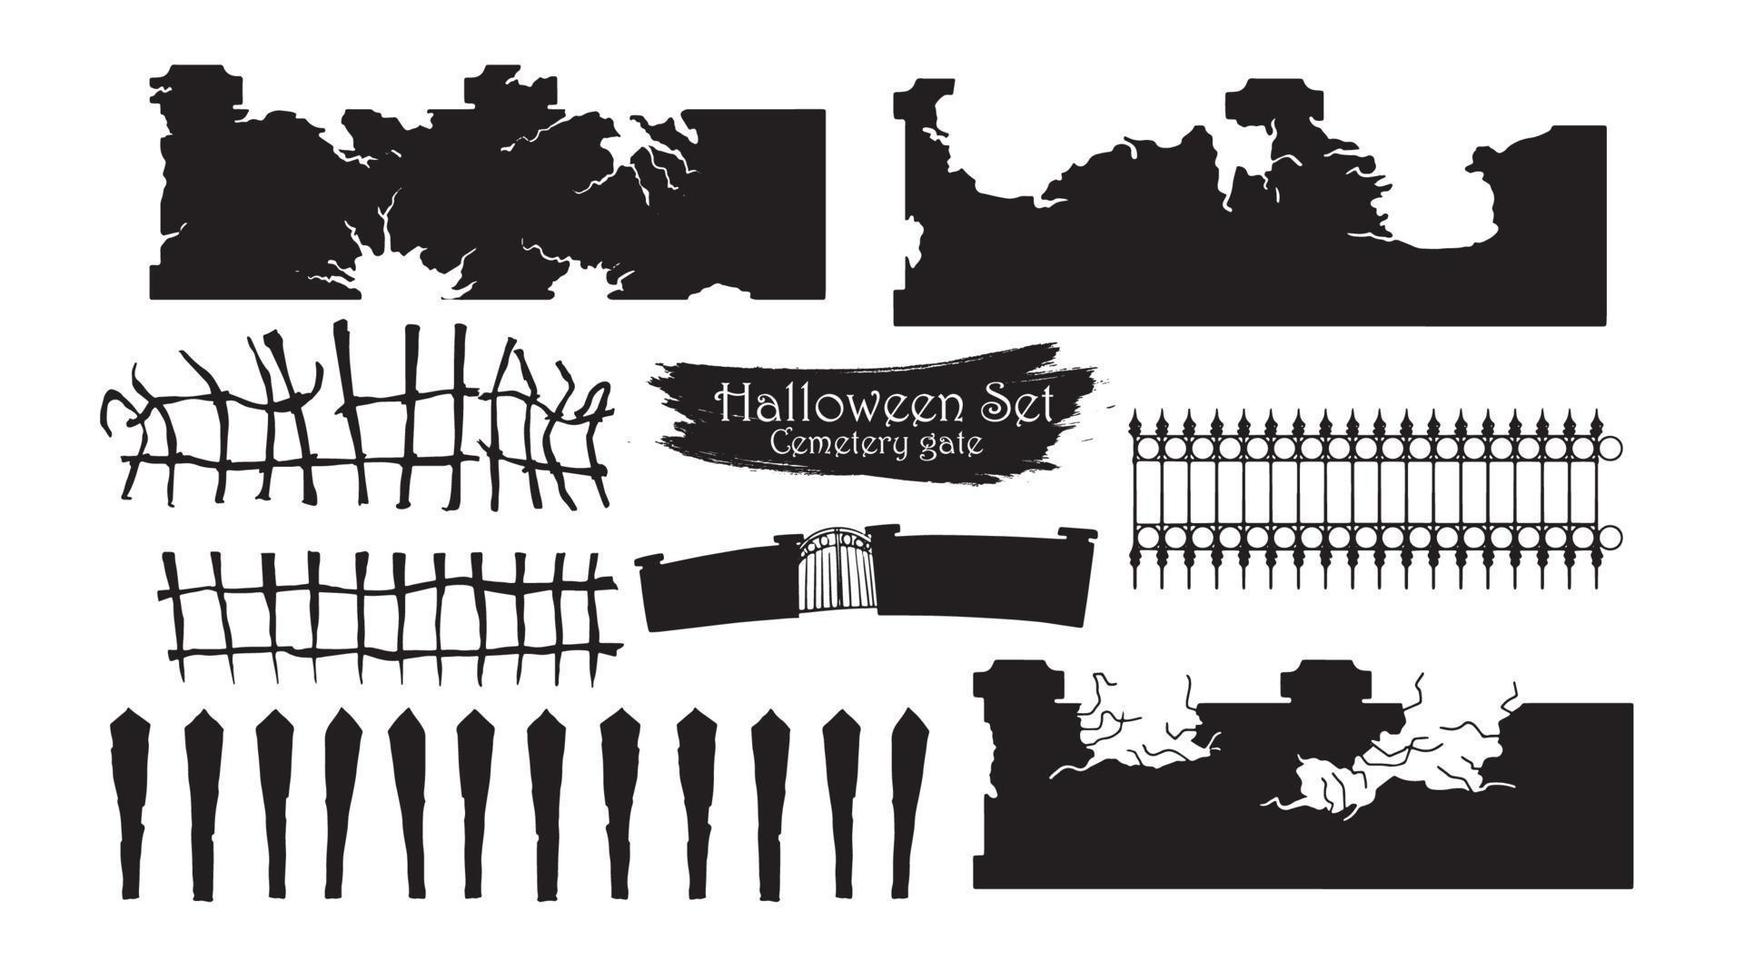 gruselige Friedhofstorschattenbildsammlung des Halloween-Vektors lokalisiert auf weißem Hintergrund. gruseliges, verfolgtes und gruseliges Fechtelement vektor